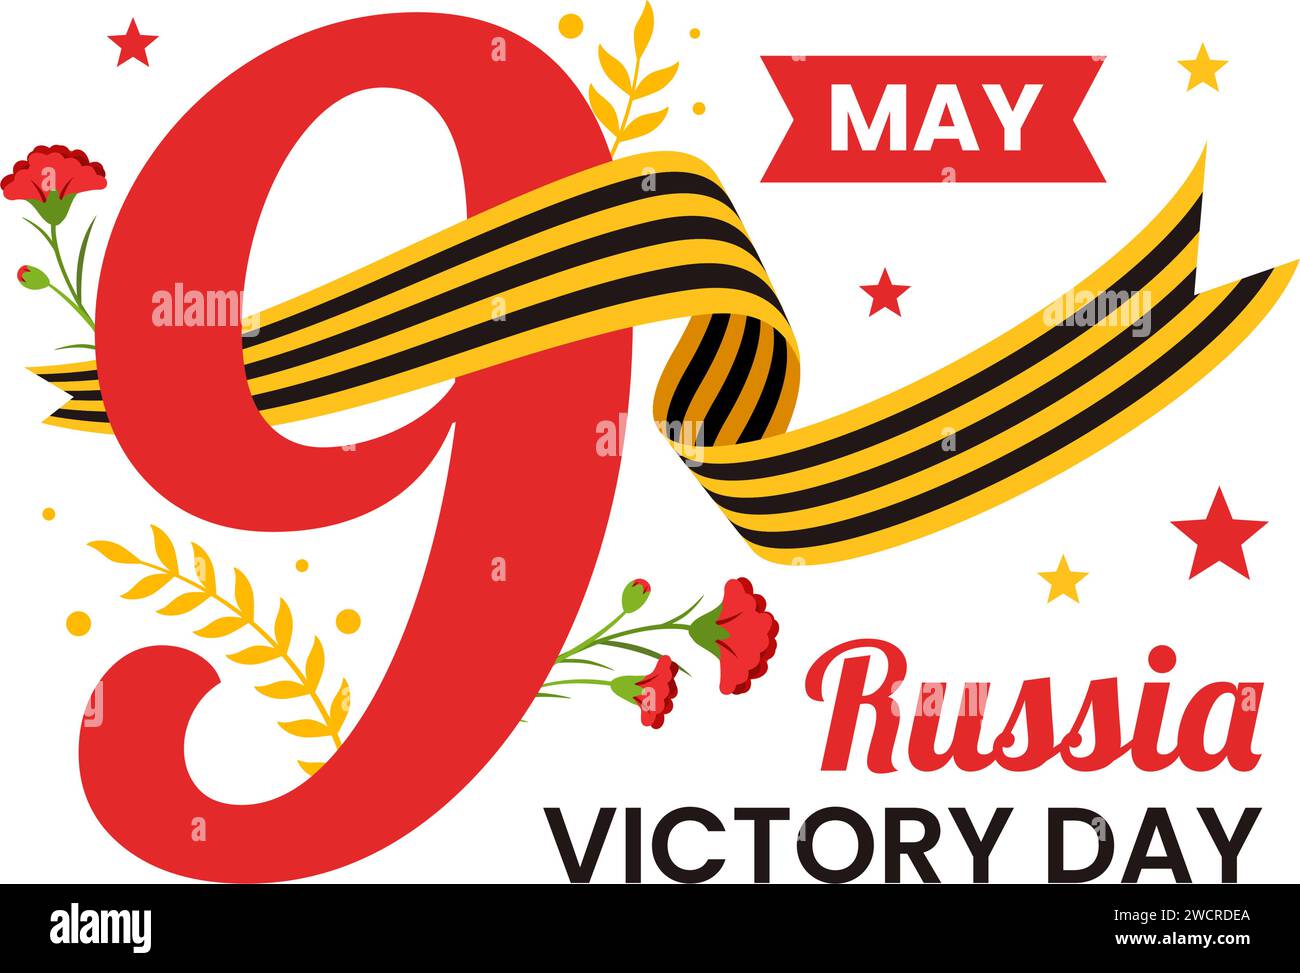 Russland Siegtag Vektor-Illustration am 9. Mai mit Medaillenstern des Helden, Großen Vaterländischen Krieg und Band Gelb Schwarz Farbe in flachem Hintergrund Stock Vektor